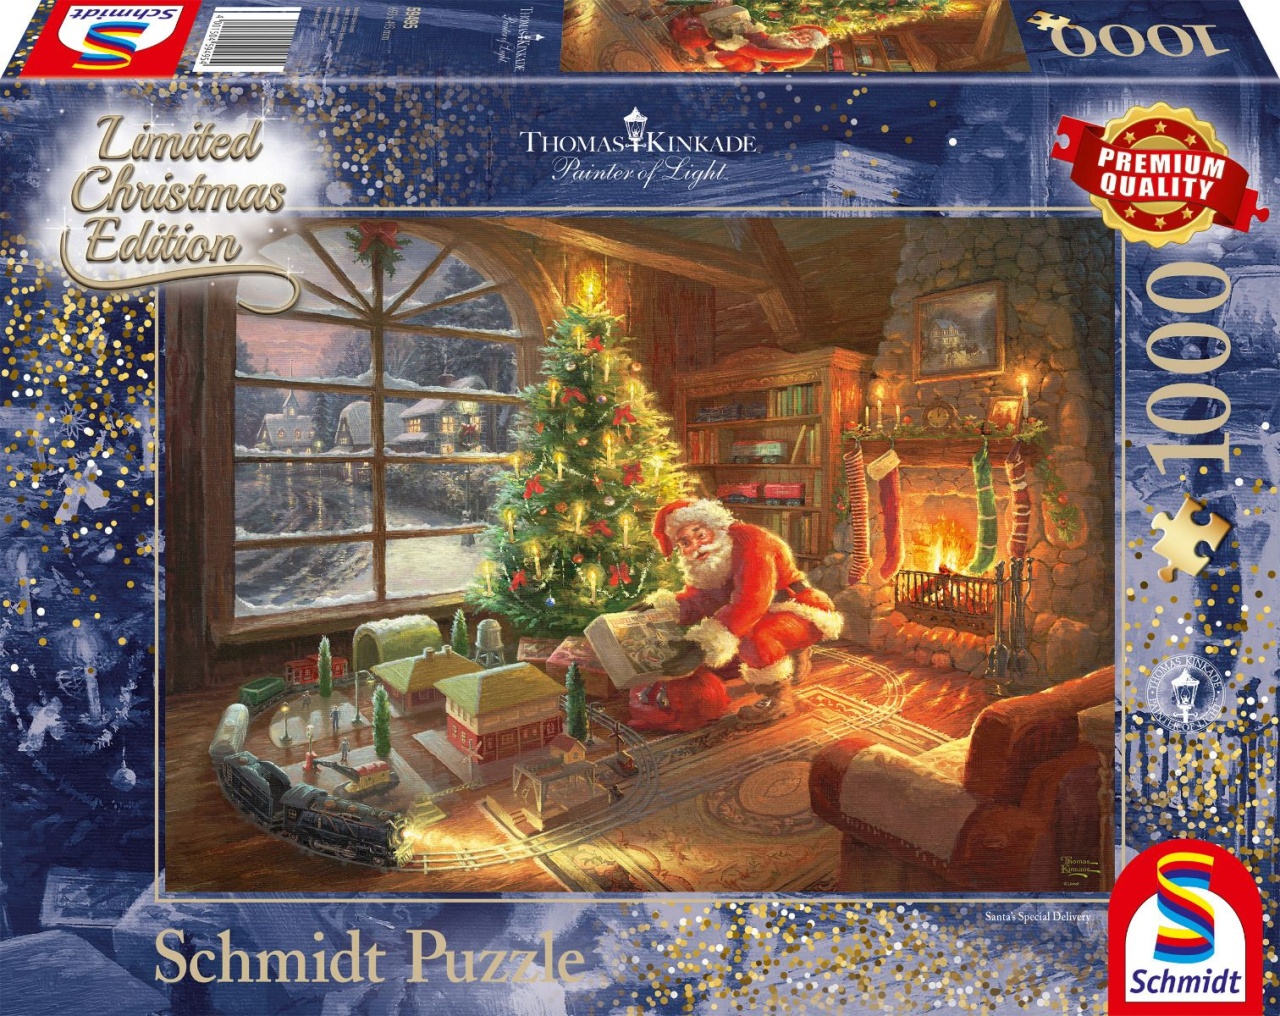 Schmidt Spiele Puzzle Thomas Kinkade Der Weihnachtsmann ist